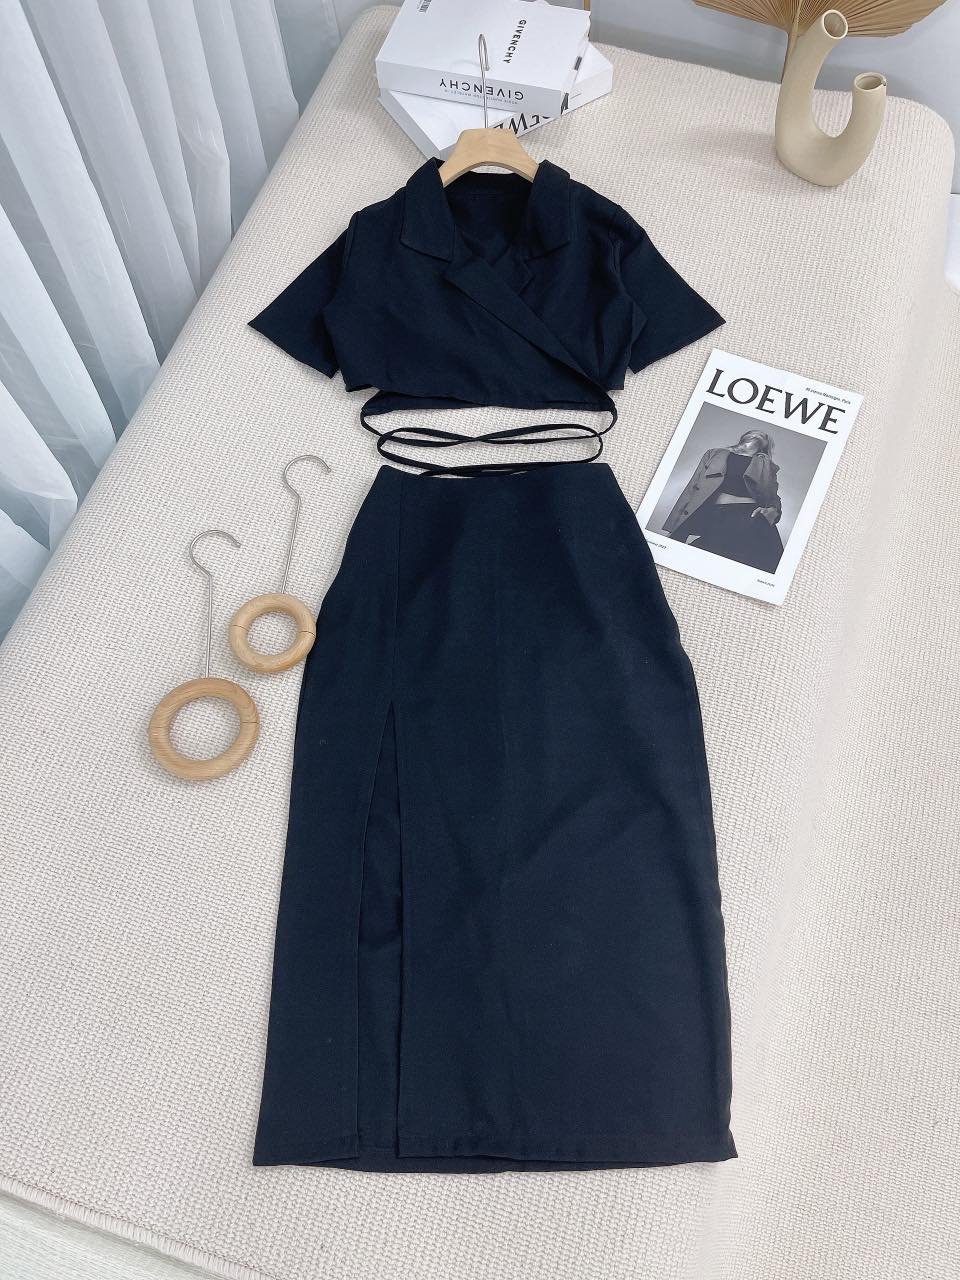 Mua Online váy suông nữ dáng dài xoắn eo buộc dây sau màu xanh lạ mắt   Khuyến mãi giá rẻ 99000 đ